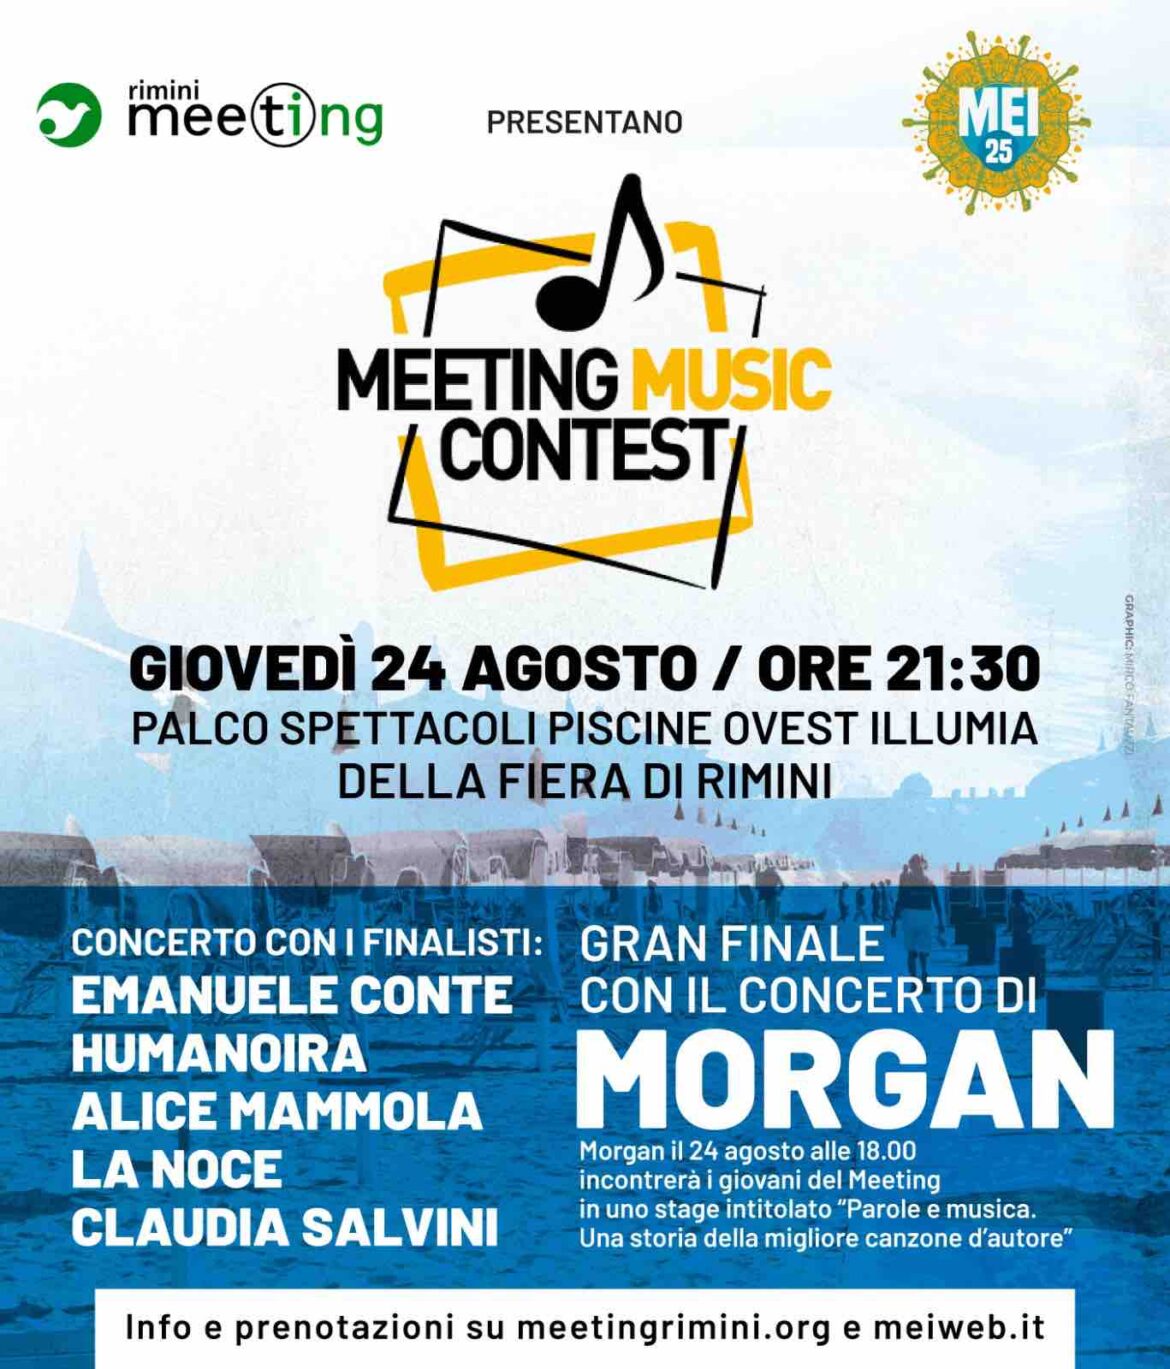 Giovedì 24 agosto arriva la finale del Meeting Music Contest con Morgan